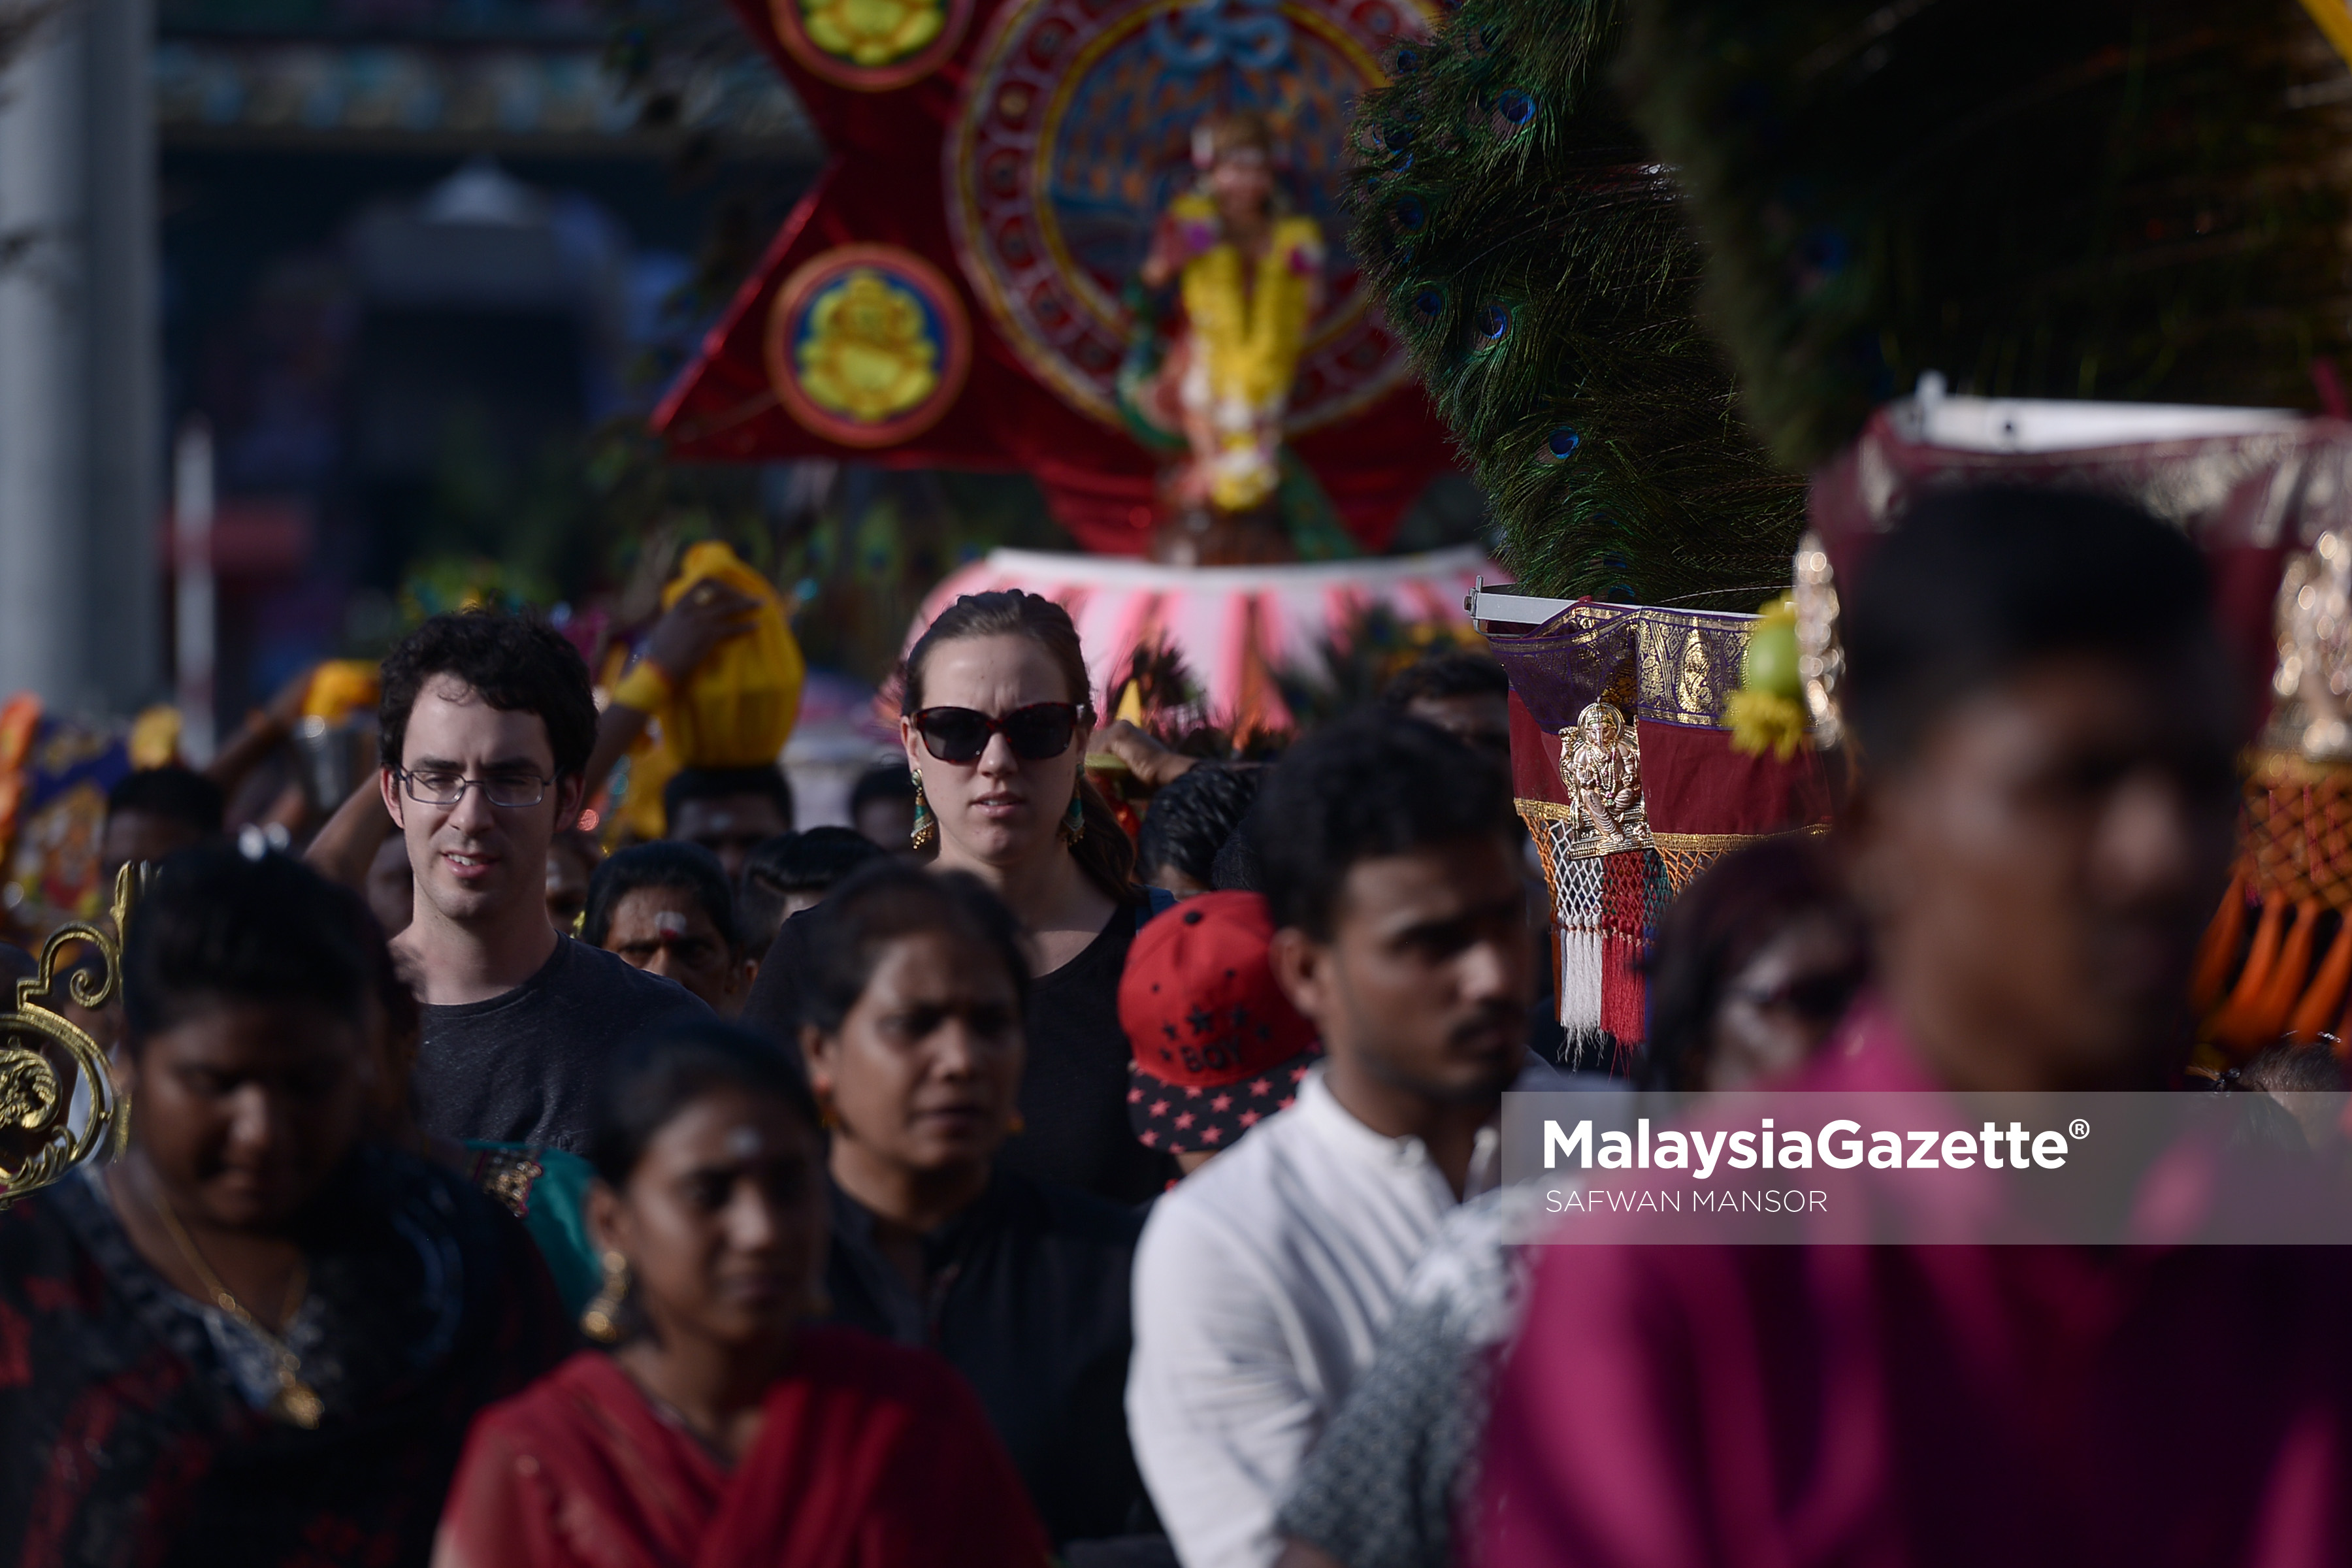 Pelancong asing turut tidak melepaskan peluang berarak bersama-sama penganut agama Hindu sempena sambutan hari perayaan Thaipusam di Batu Caves, Selangor. foto SAFWAN MANSOR, 09 FEBRUARI 2017